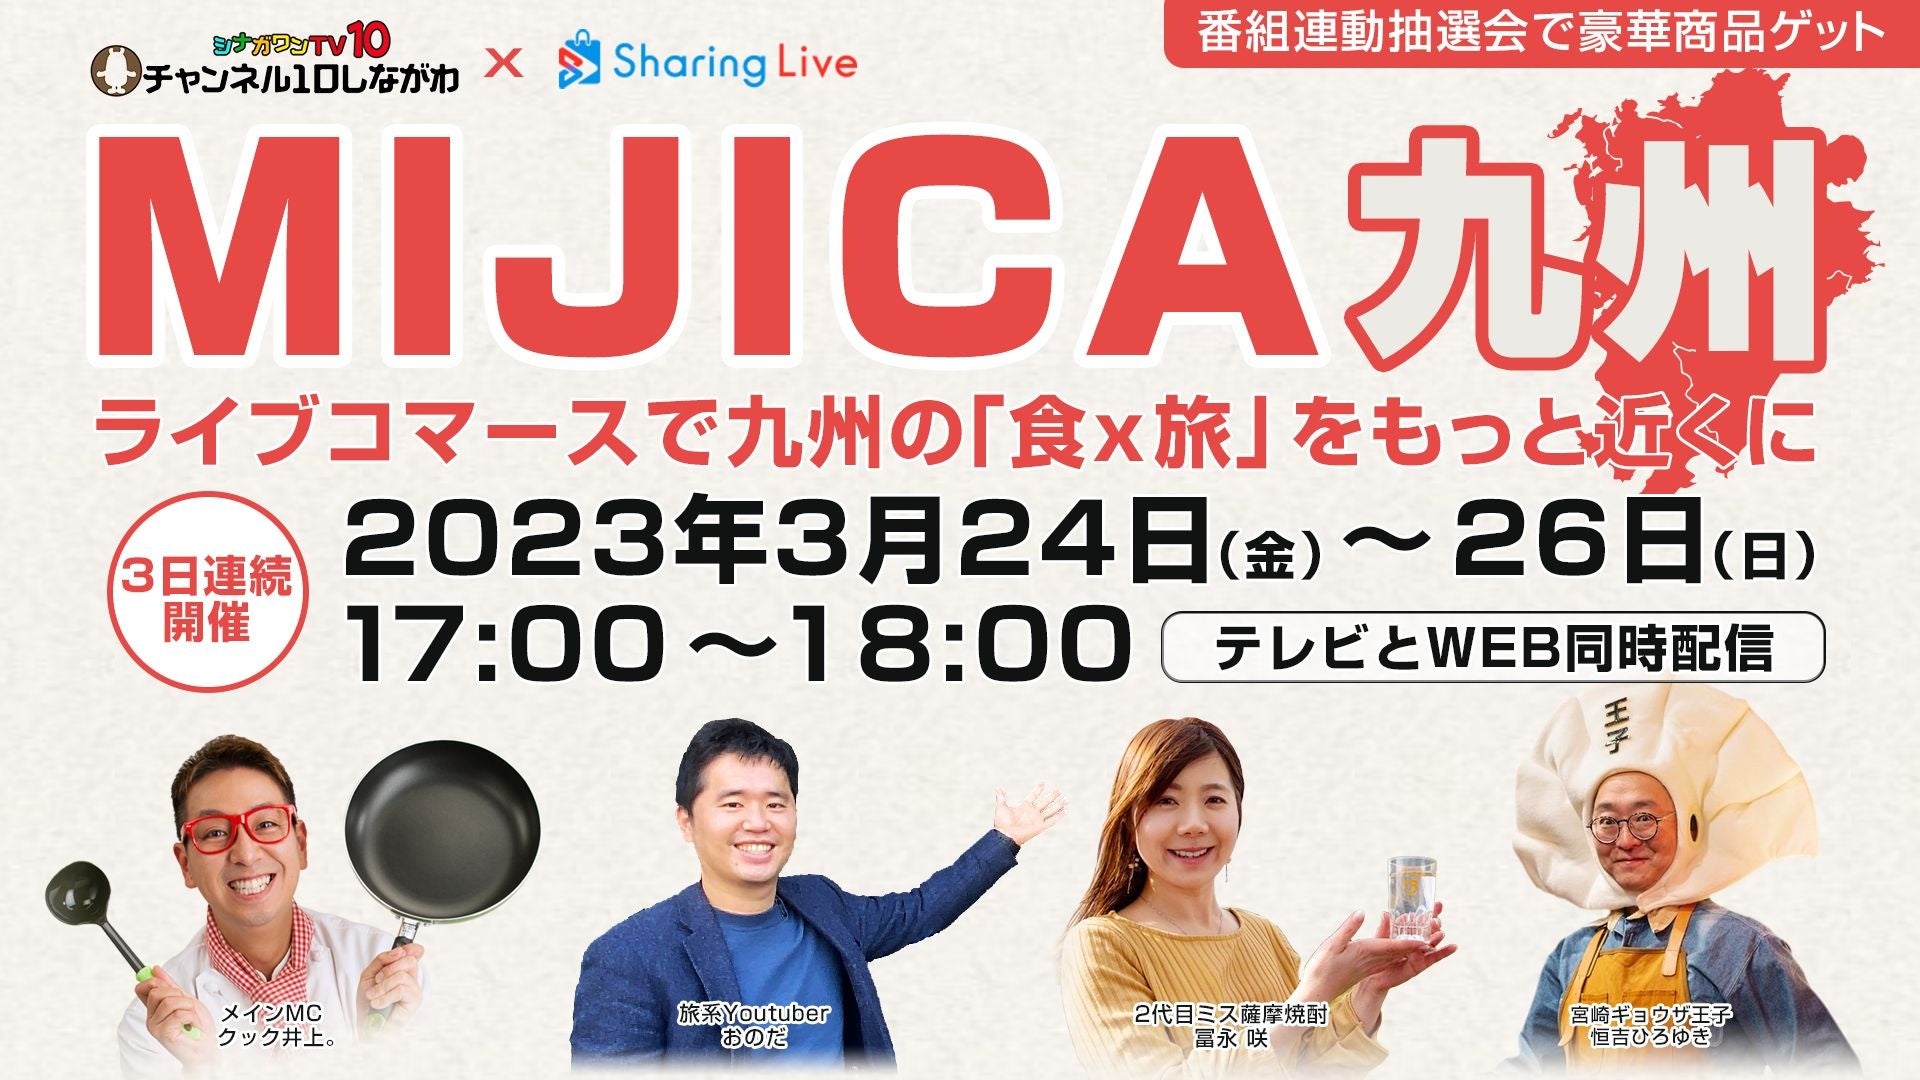 ケーブルテレビとWEBの同時中継ライブコマースで九州各地のうまかもんをご紹介！「MIJICA九州」